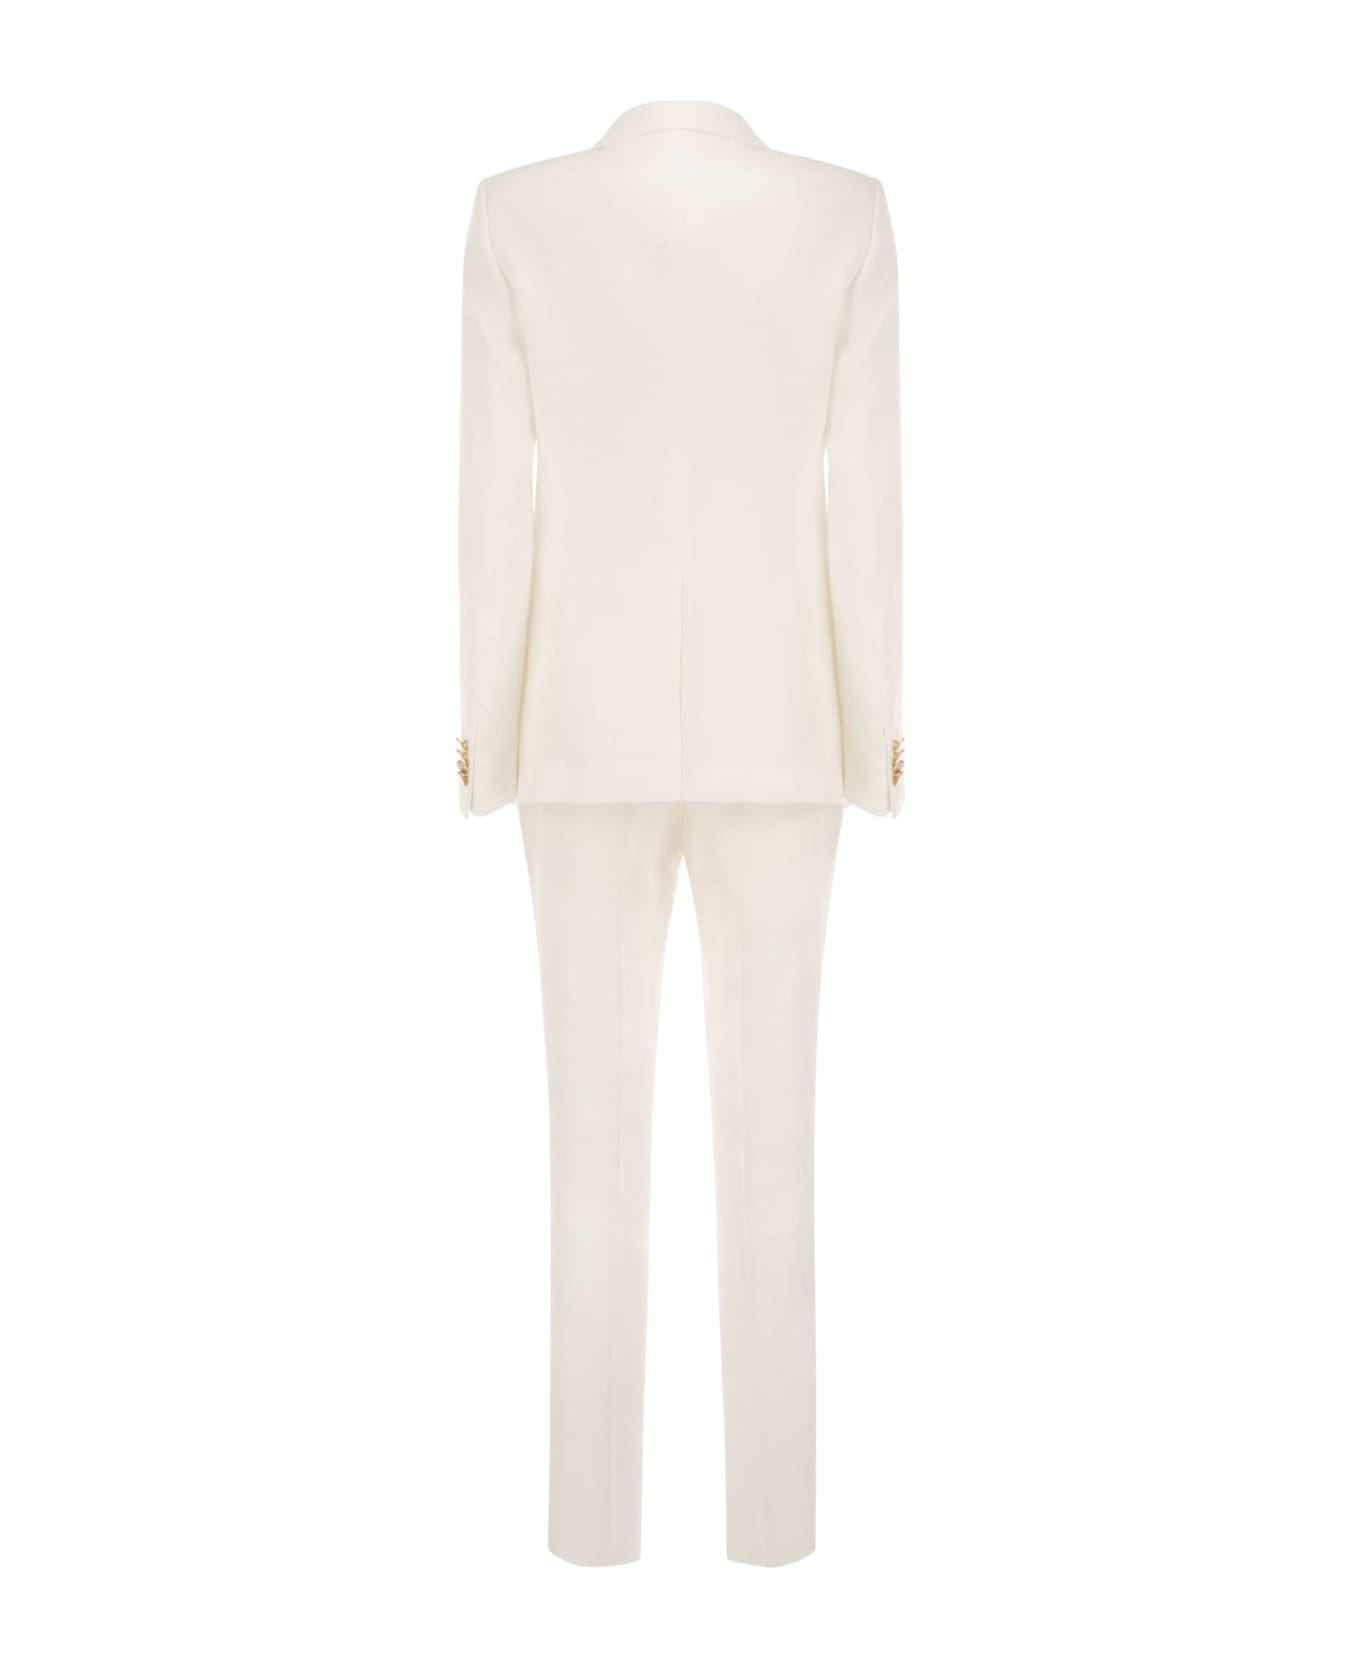 Tagliatore Linen Suit - White